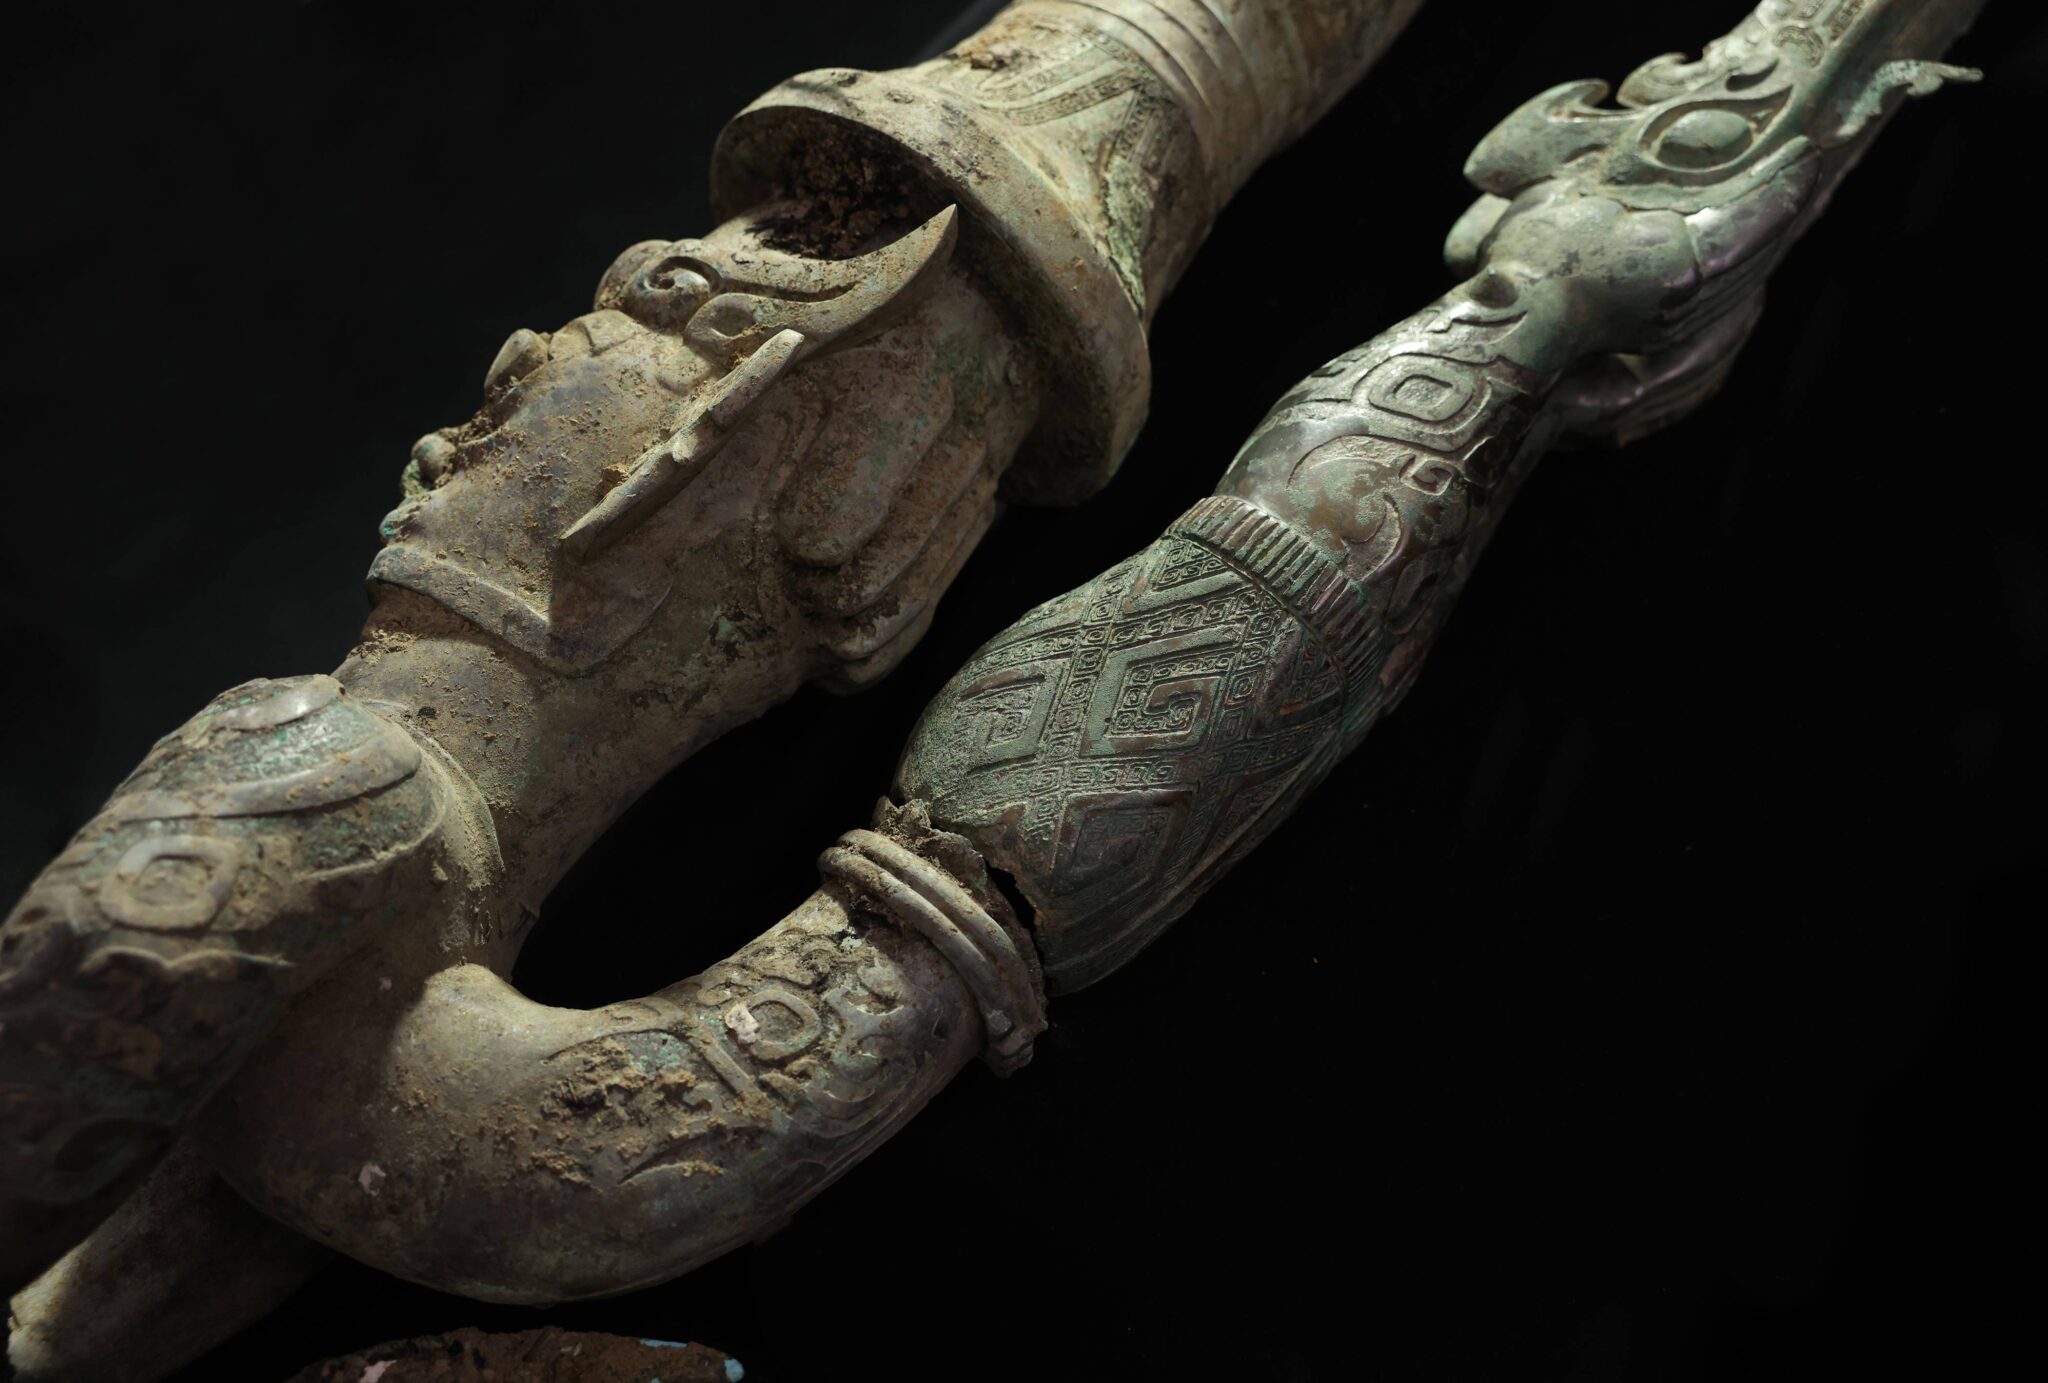 Bronze Age human-snake sculpture reunited with its bird’s leg